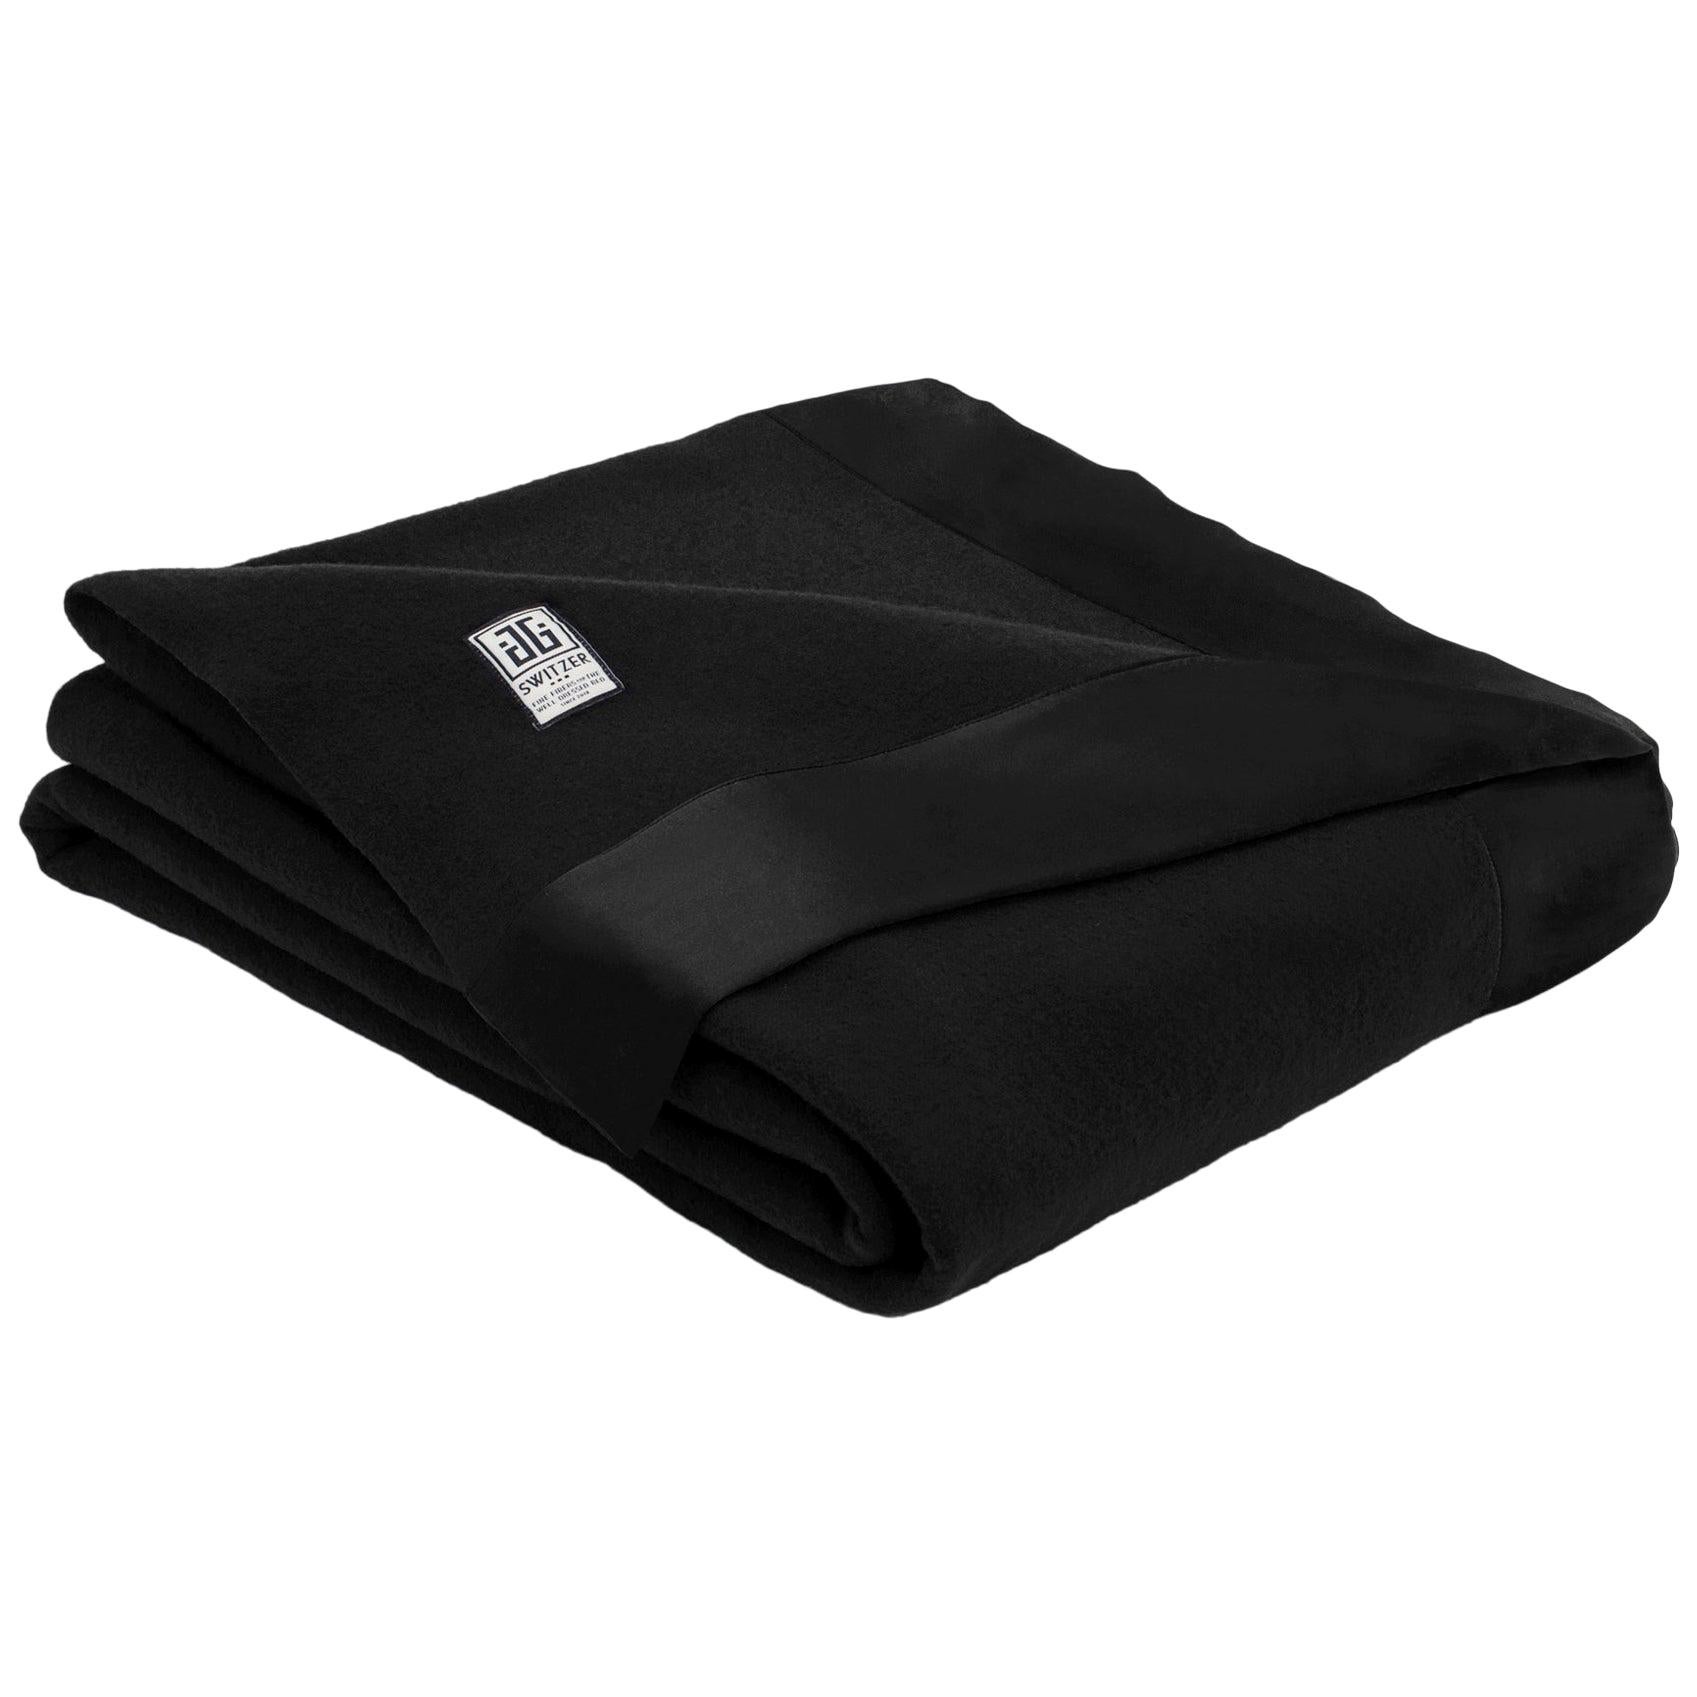 Black Blankets For Sale | lupon.gov.ph